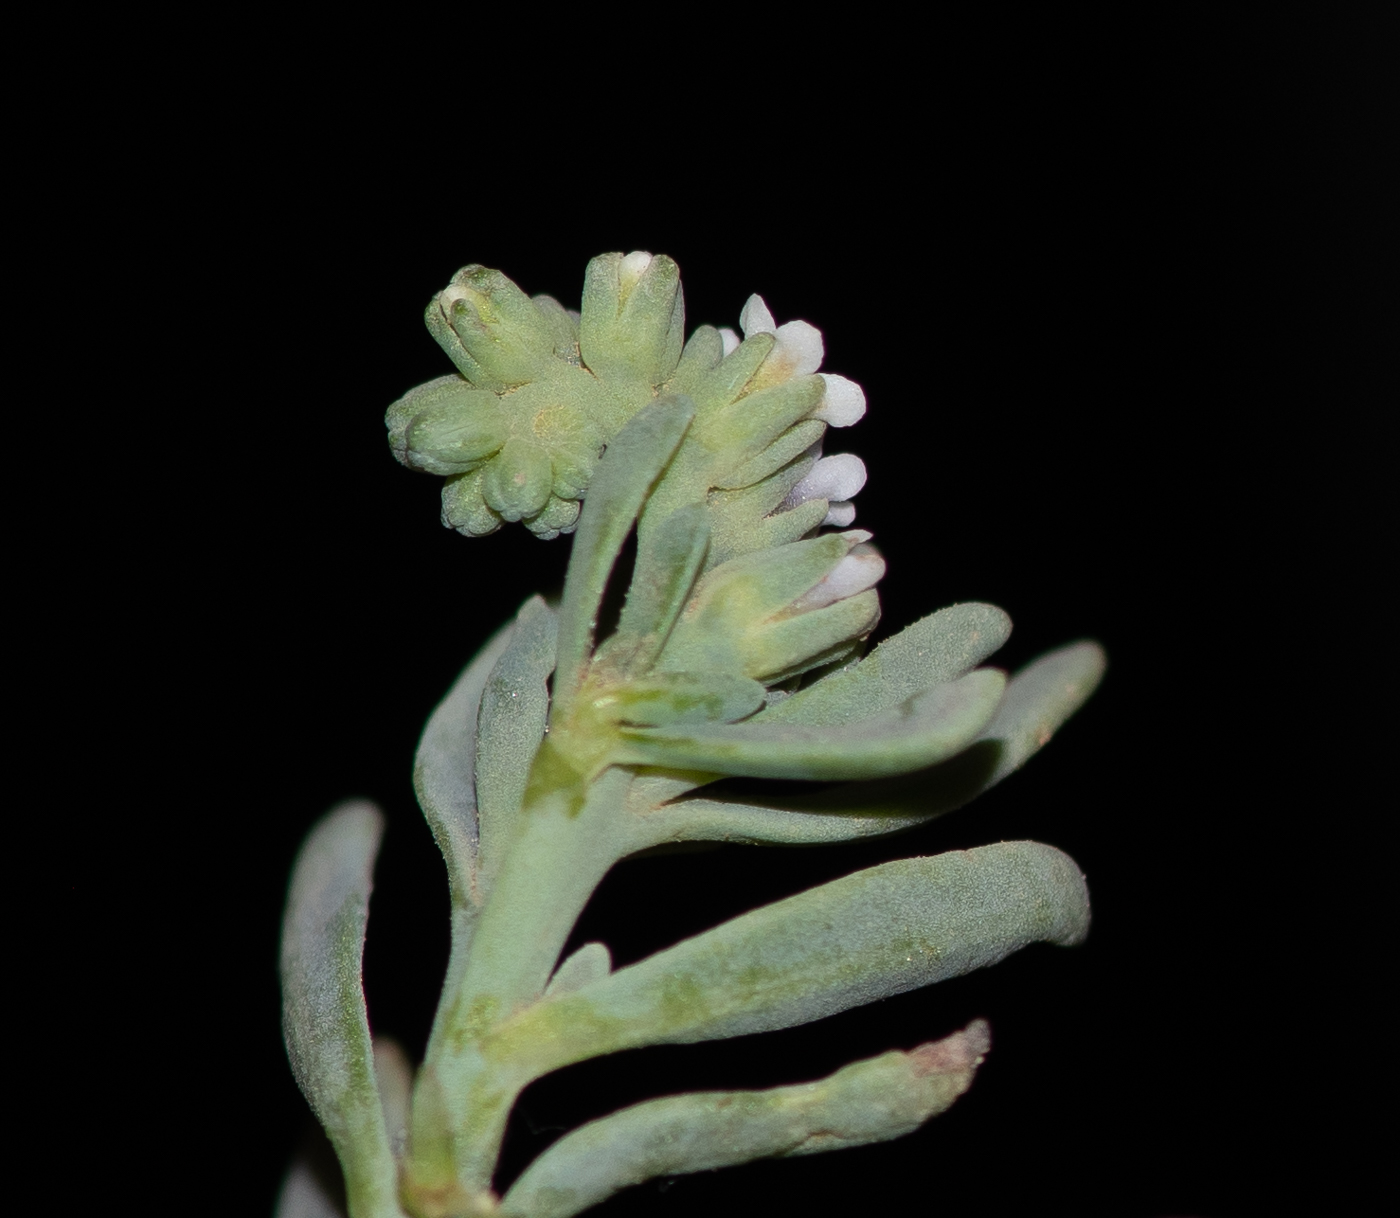 Image of Heliotropium curassavicum specimen.